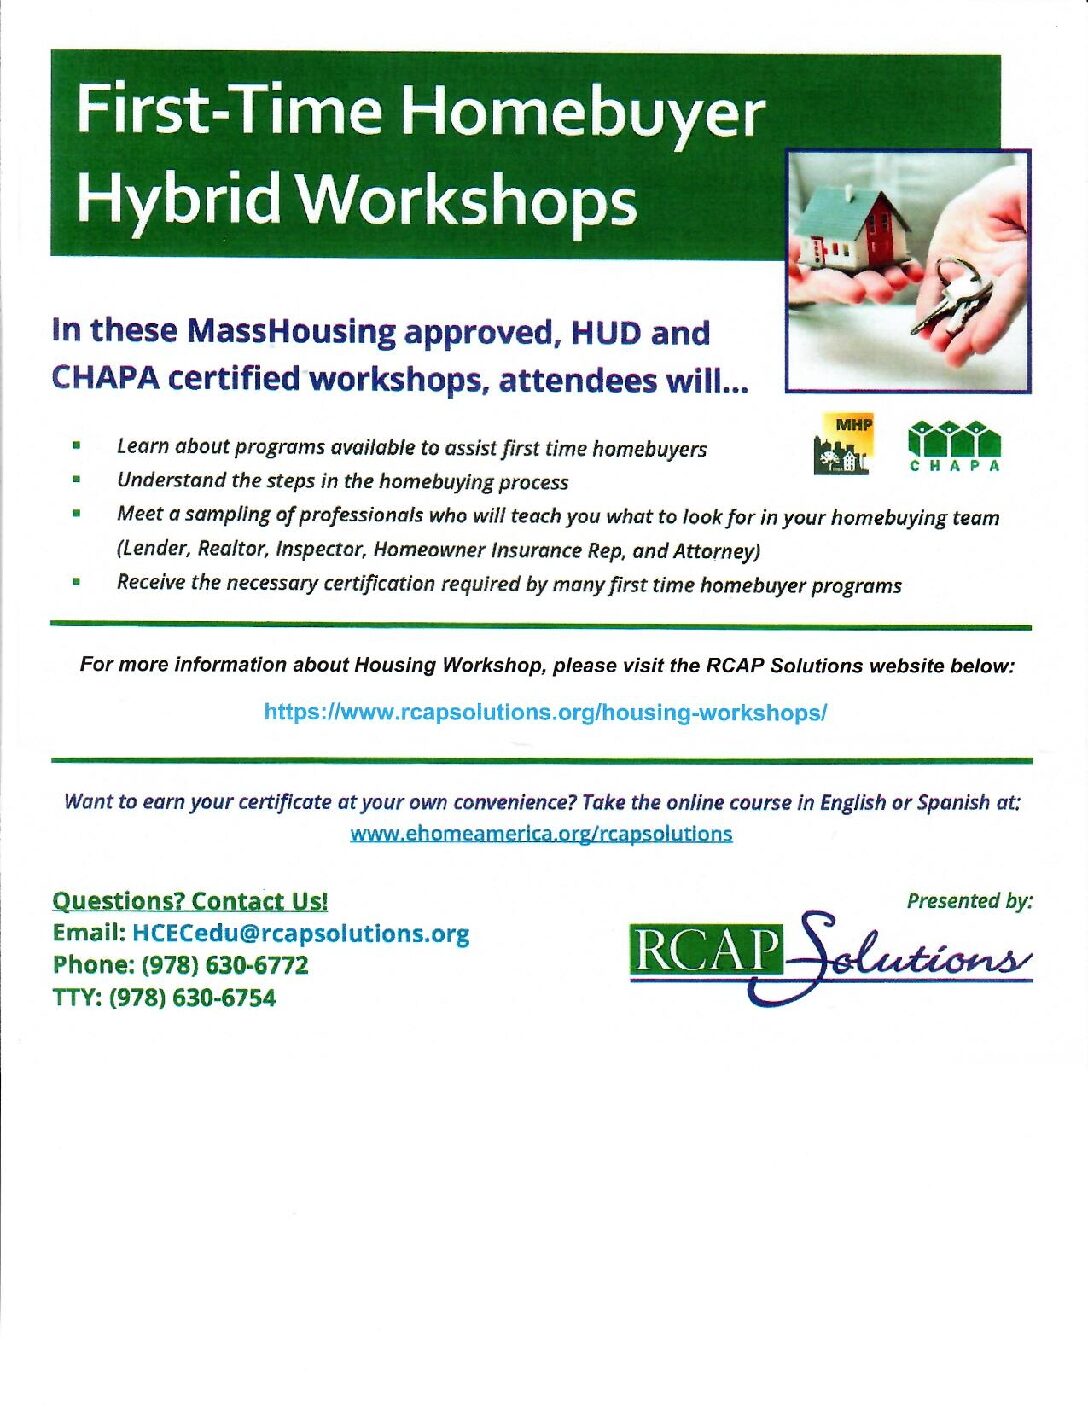 FTH Hybrid Workshops 08-2023